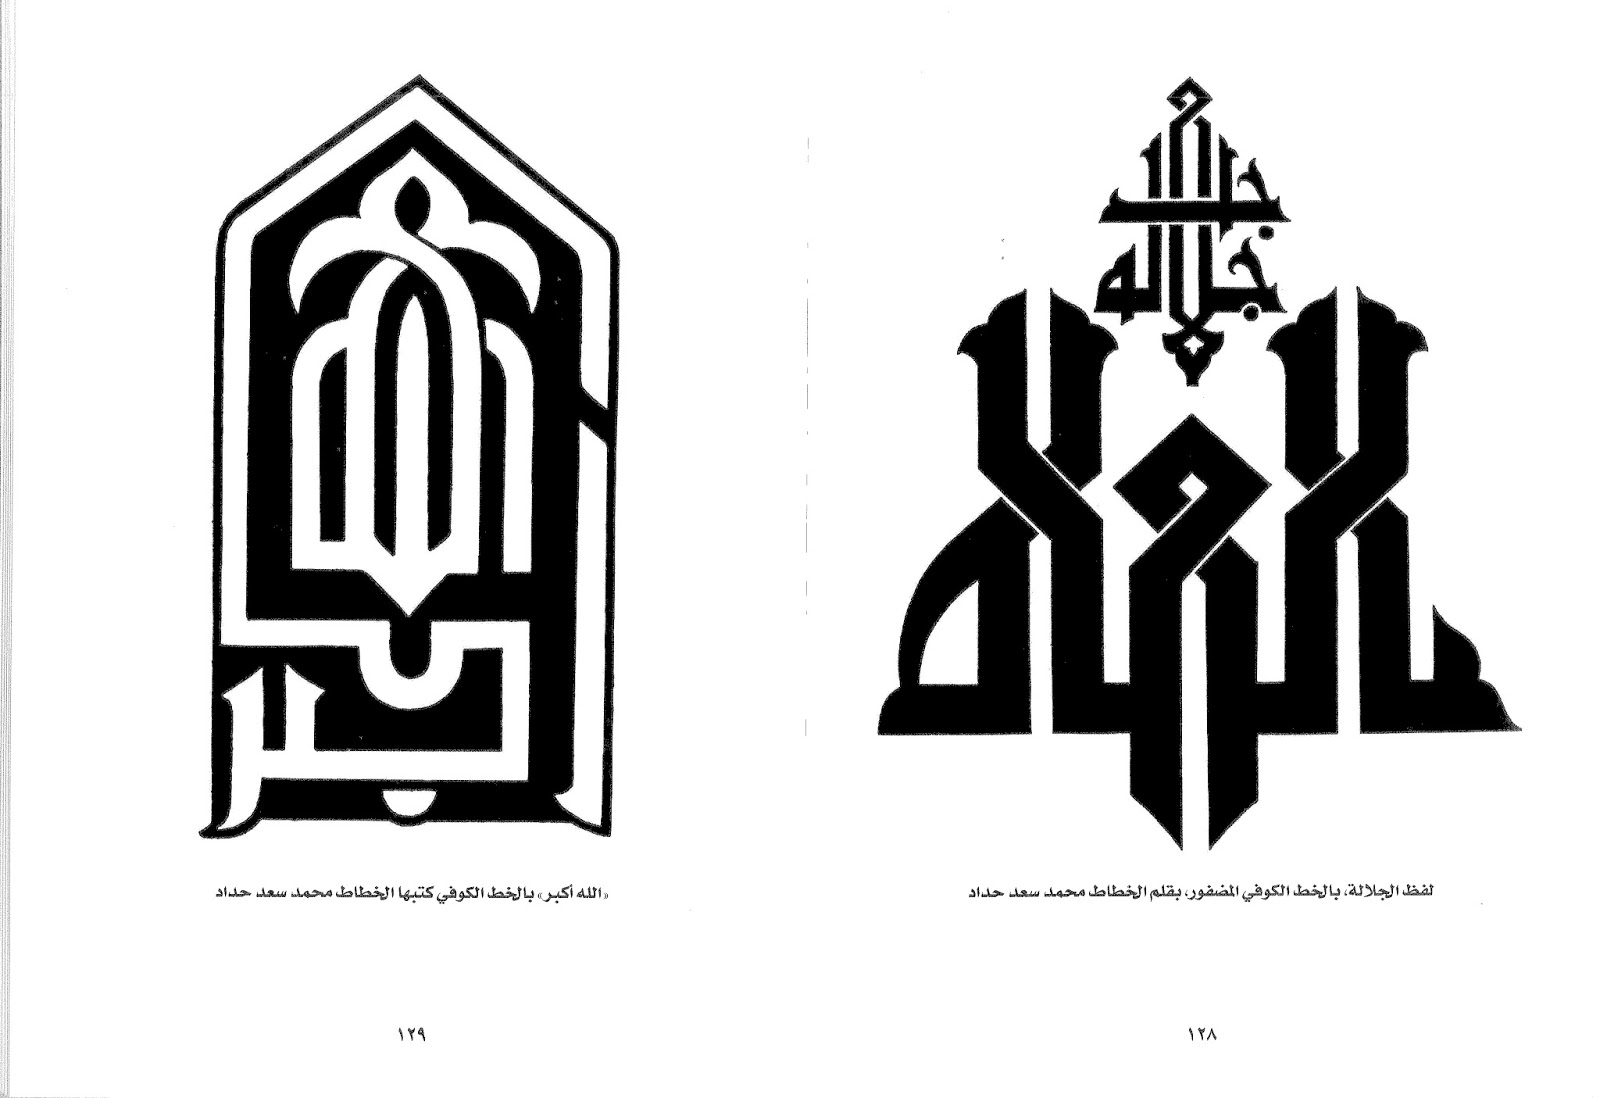 كتاب موسوعة الخط العربي " الخط الكوفي " الأستاذ كامل سلمان الجبوري